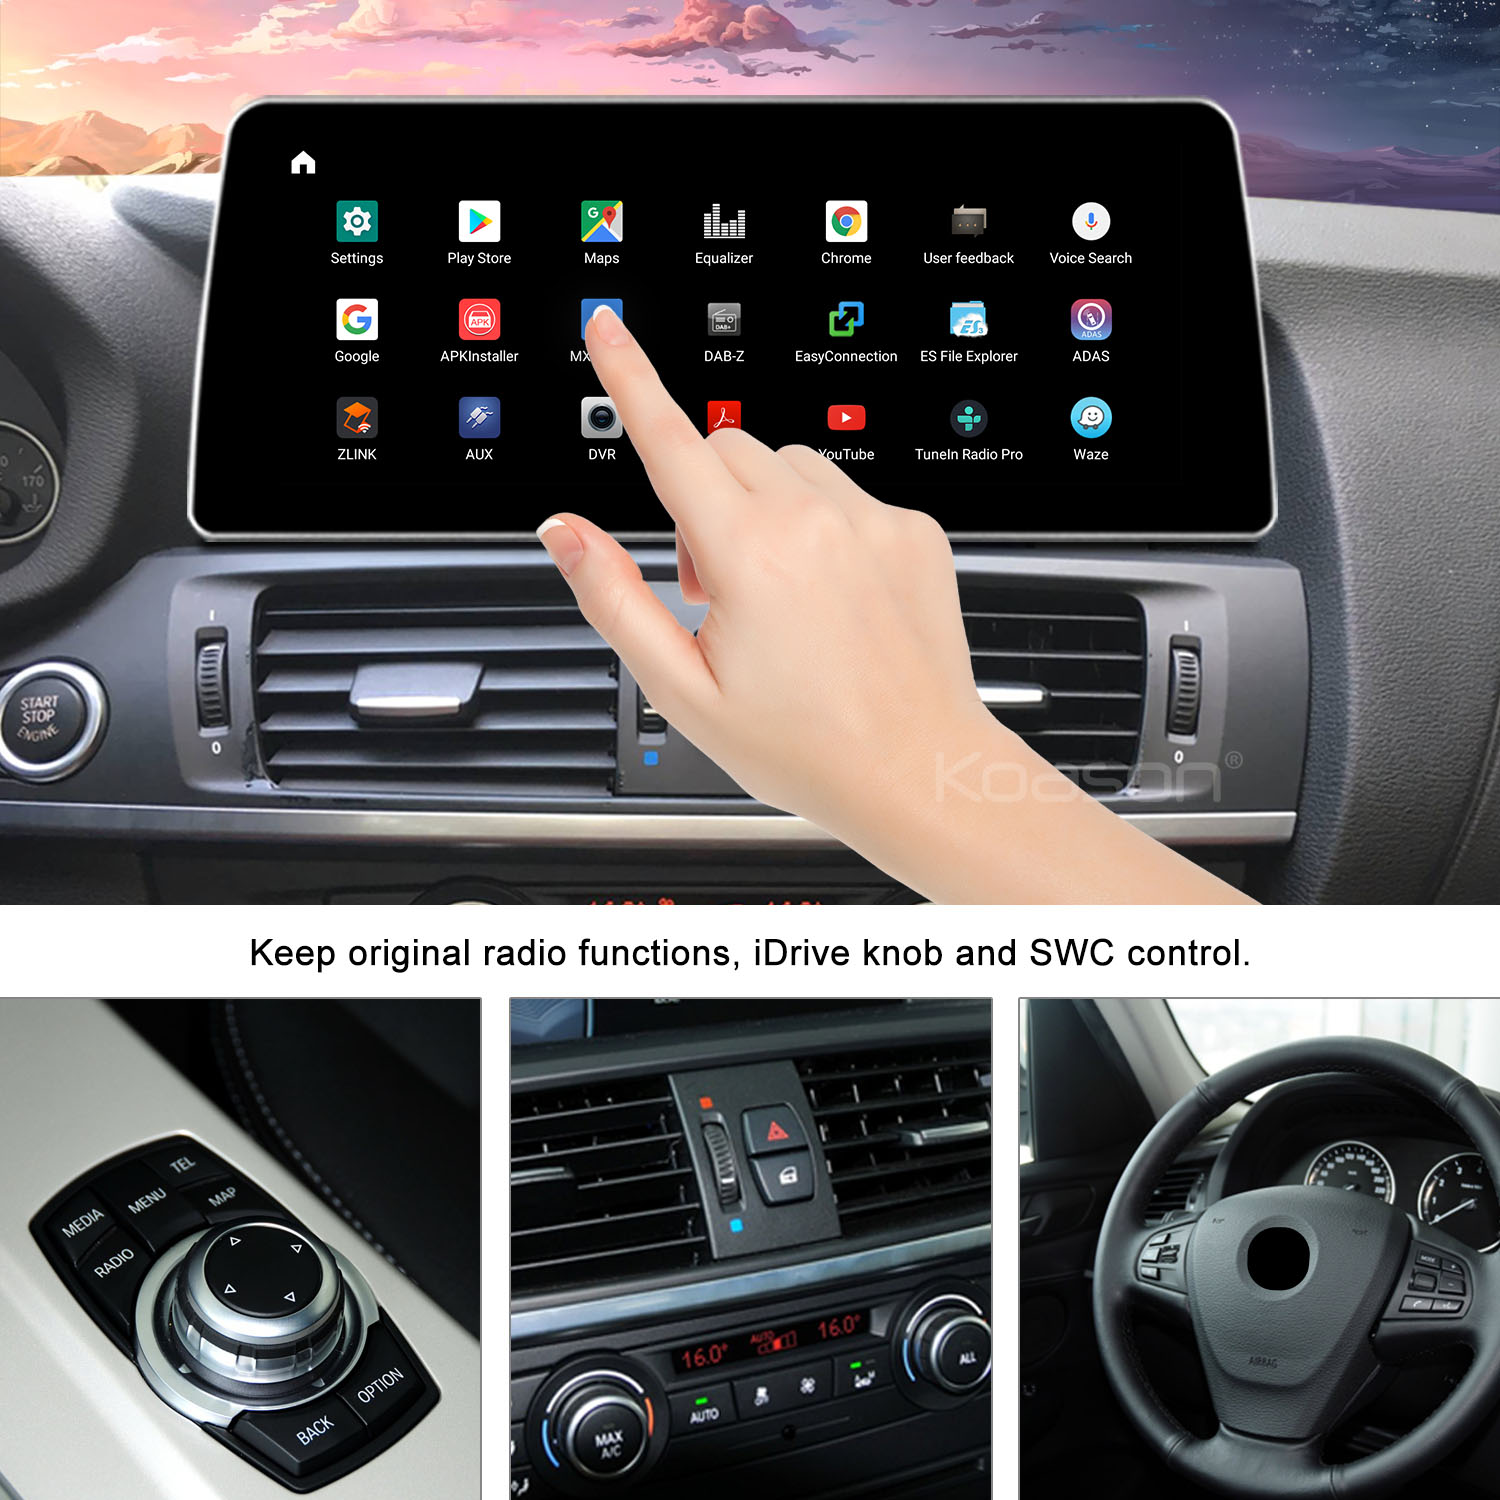 Apple Carplay wireless / Android auto for Bmw X3 G01 (2018-2020) NBT EVO